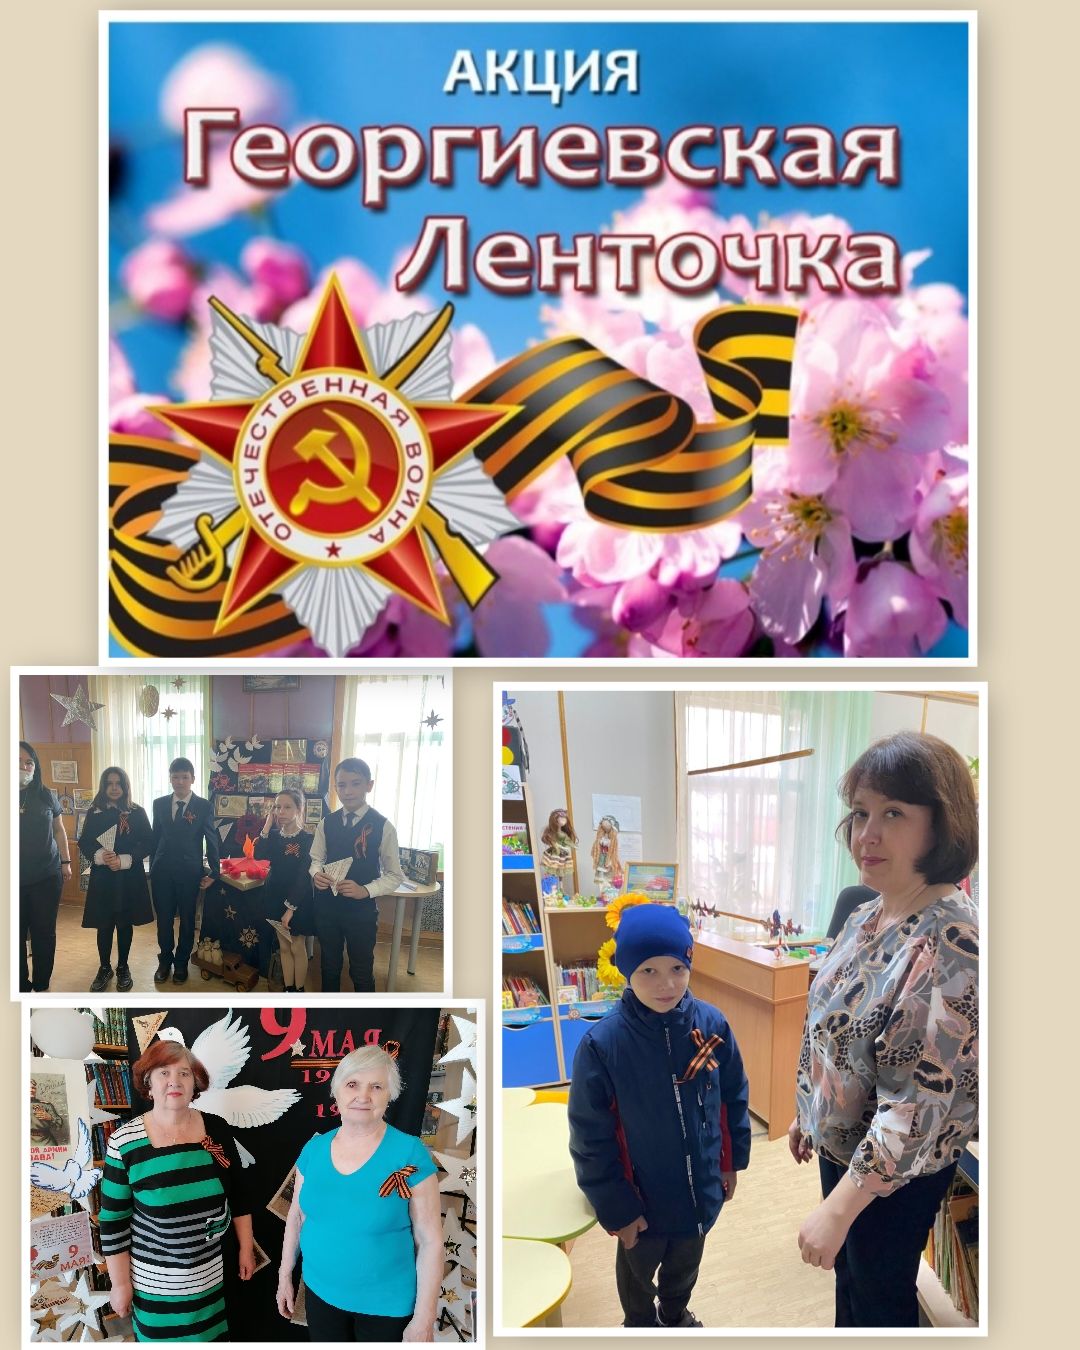 Лаишевская Центральная библиотека присоединилась к Всероссийской акции "Георгиевская ленточка"